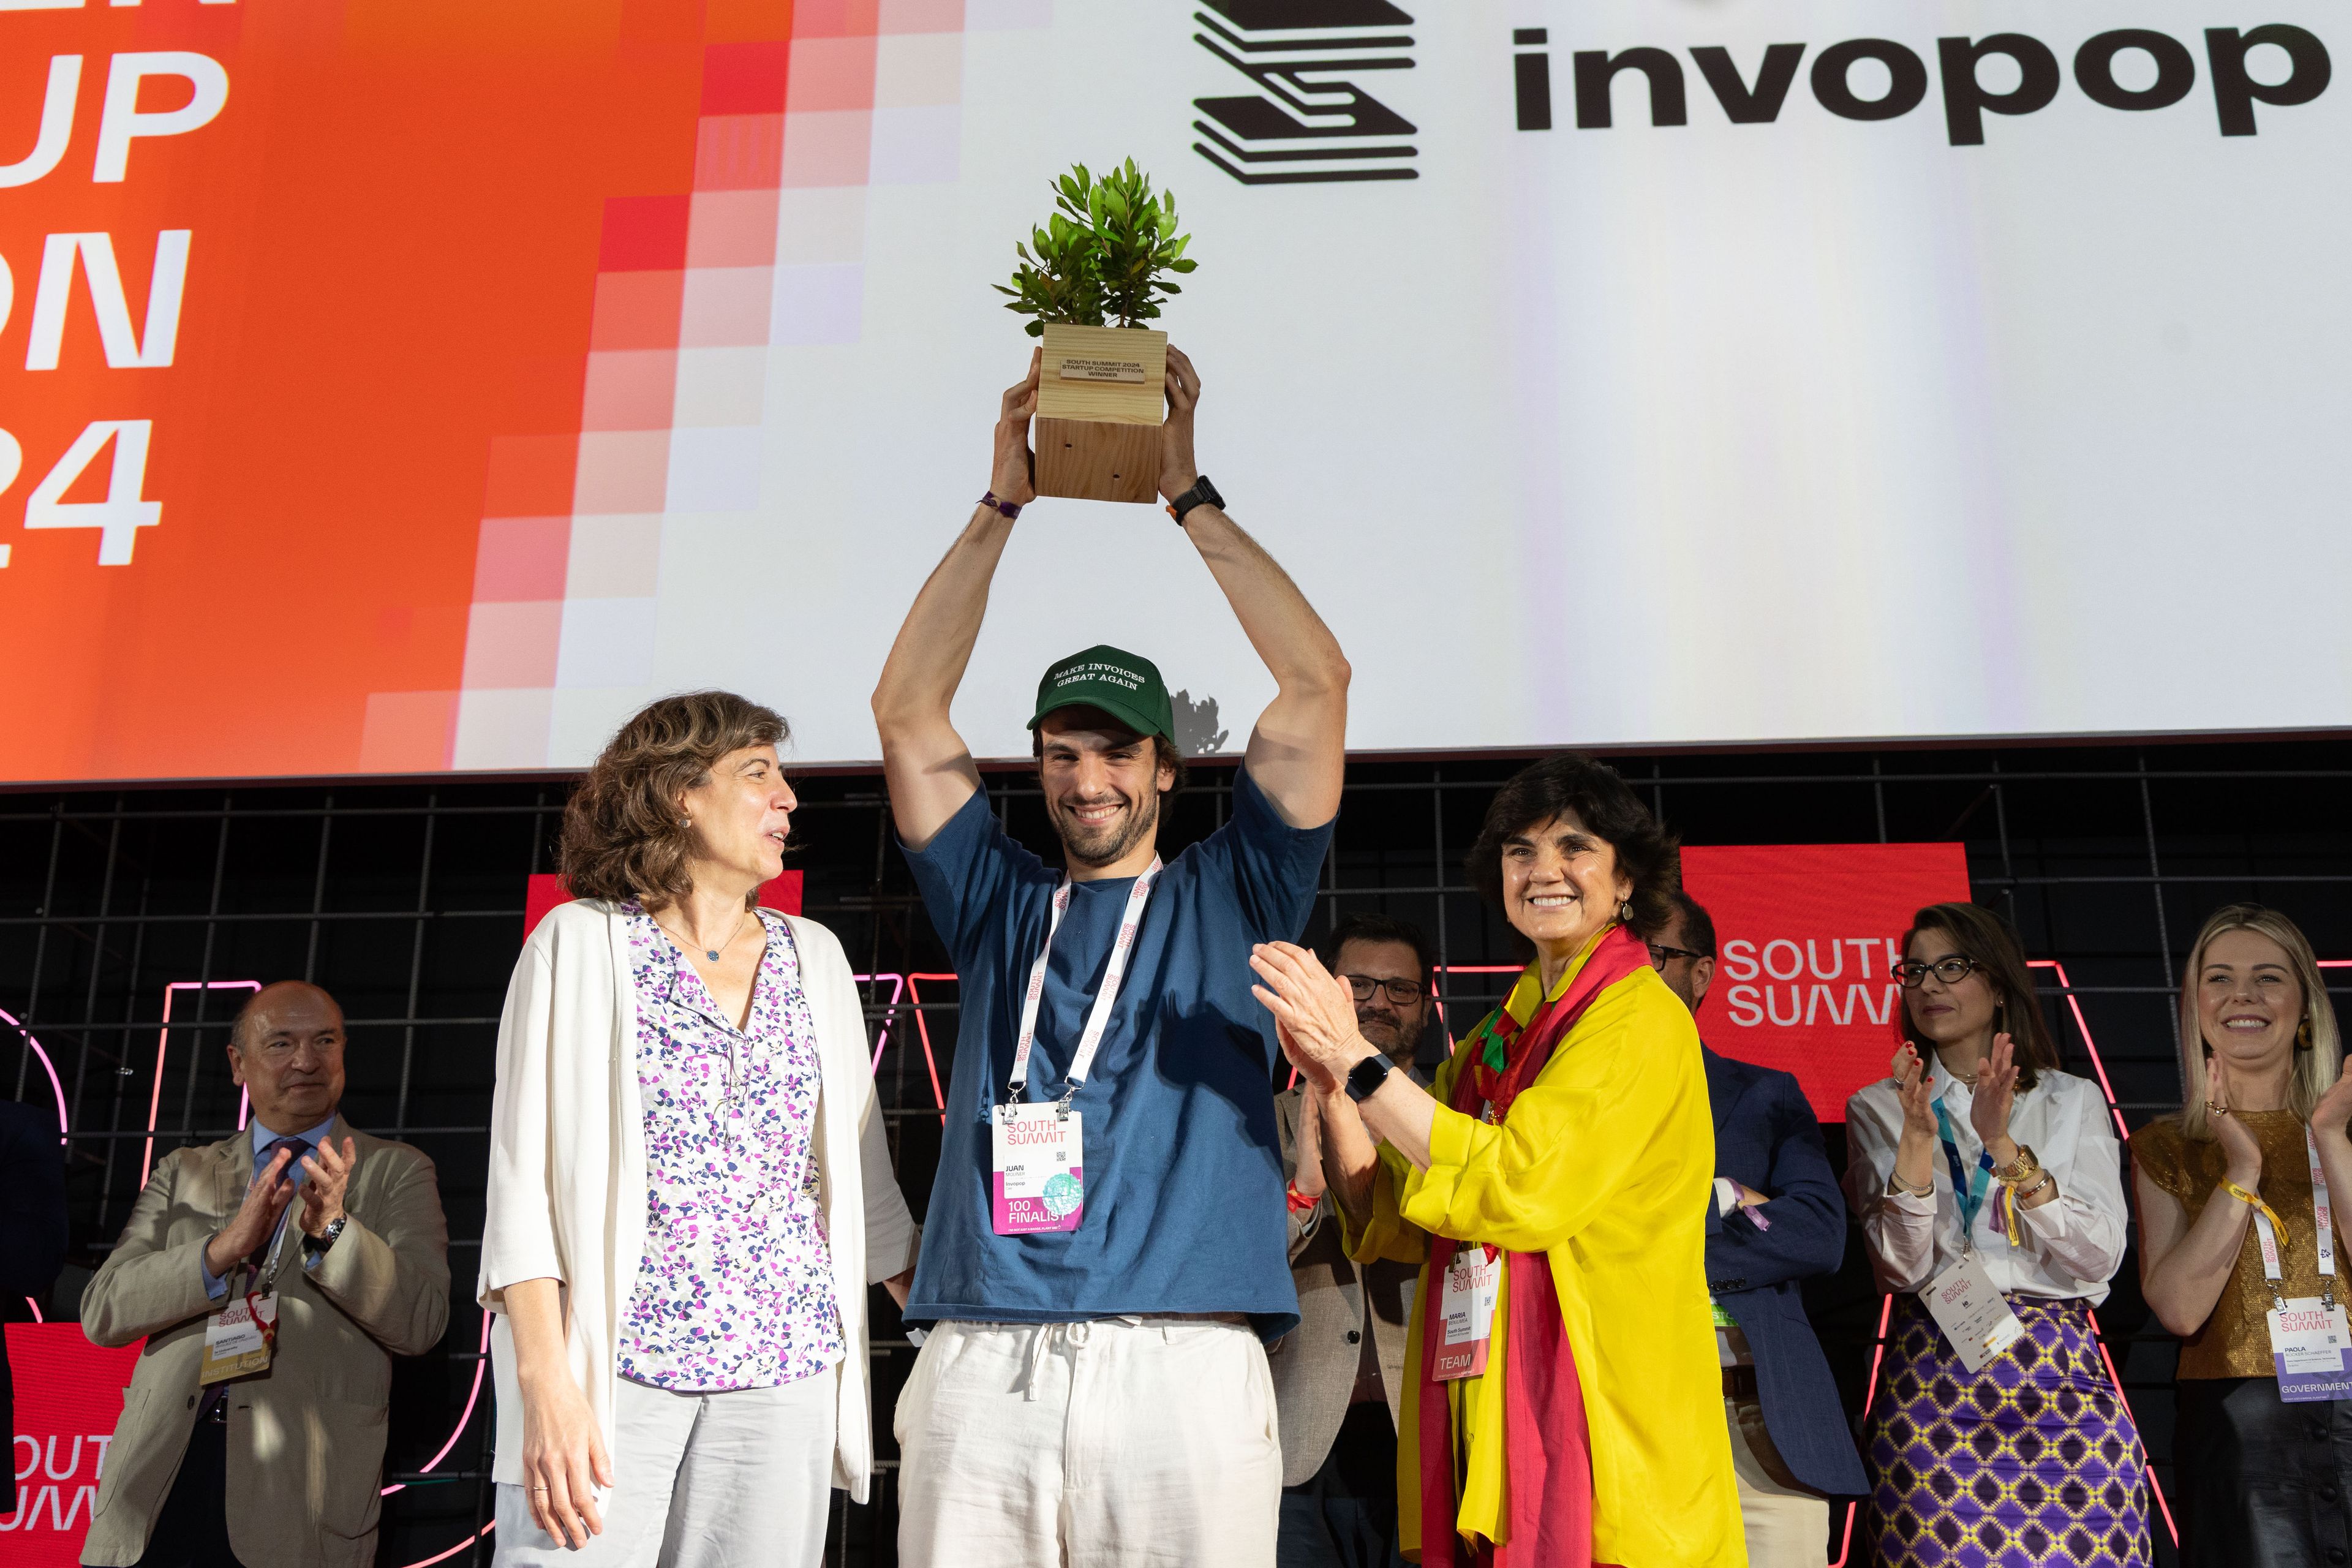 En primer plano, de izquierda a derecha: Mayte Ledo, secretaria de Transformación digital; Juan Moliner, cofundador de Invopop; y María Benjumea, presidenta del South Summit.